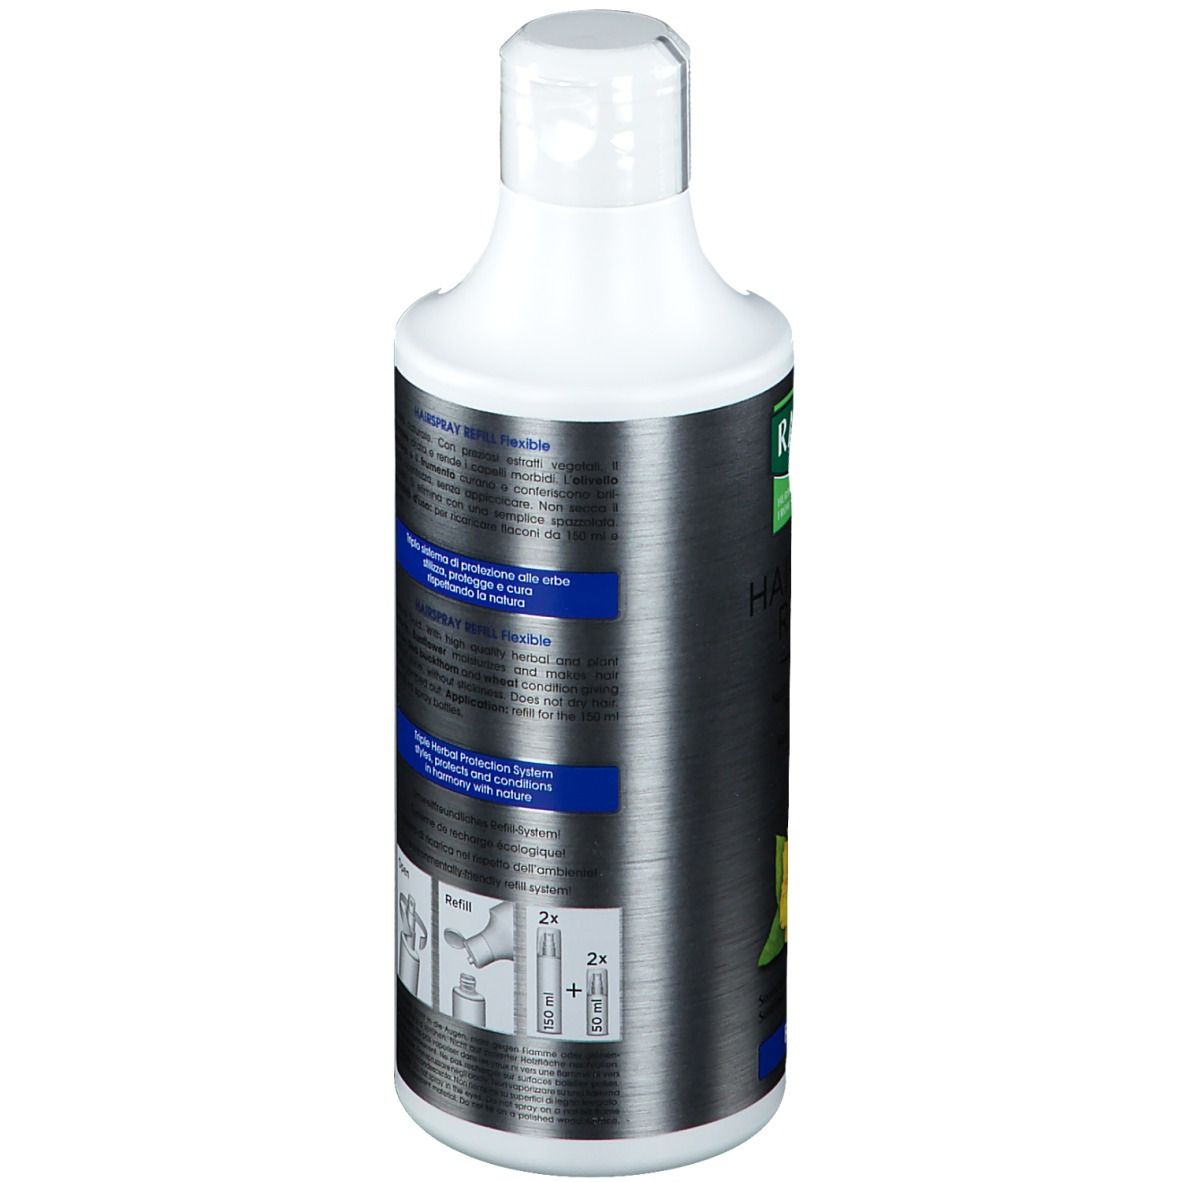 RAUSCH Hairspray Refill flexible